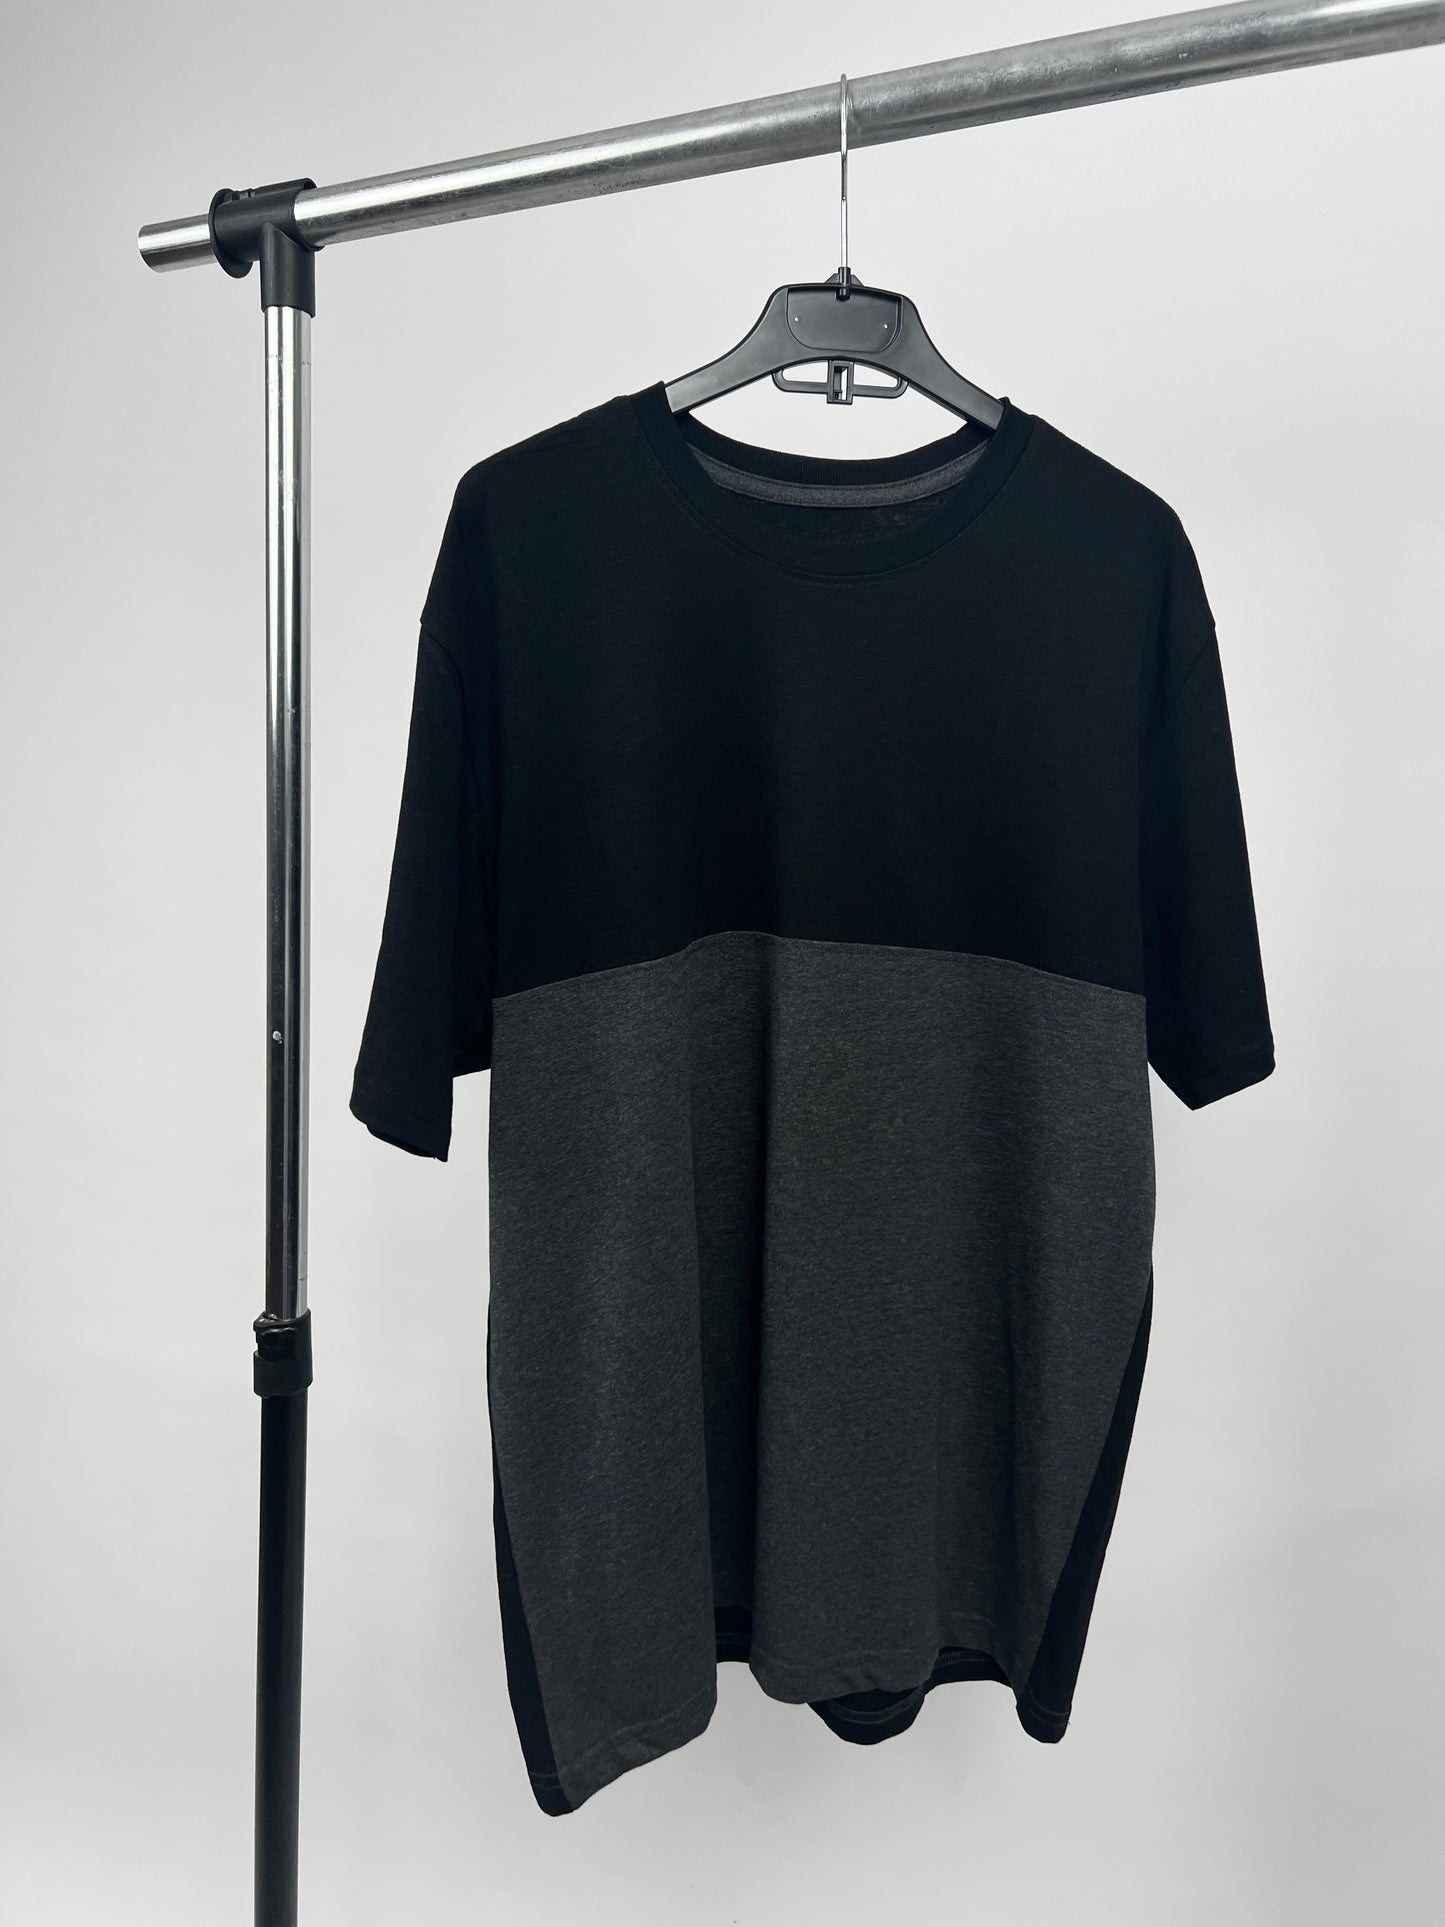 Garag3 Colorblock T-shirt in black/gray